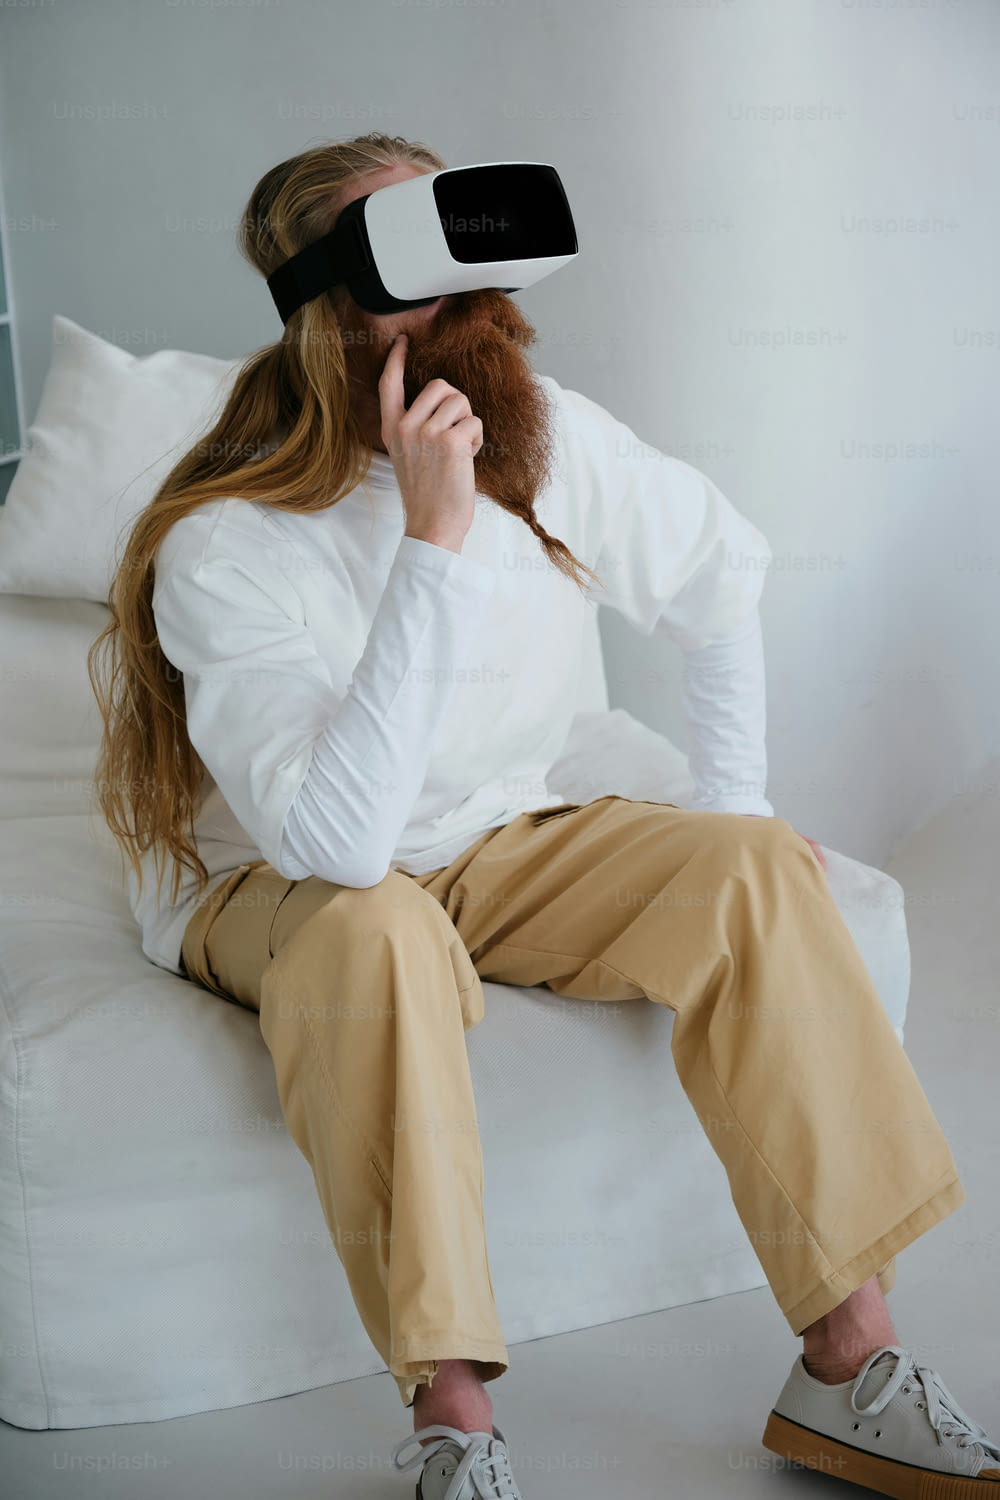 흰 셔츠와 황갈색 바지를 입고 소파에 앉아 있는 여성